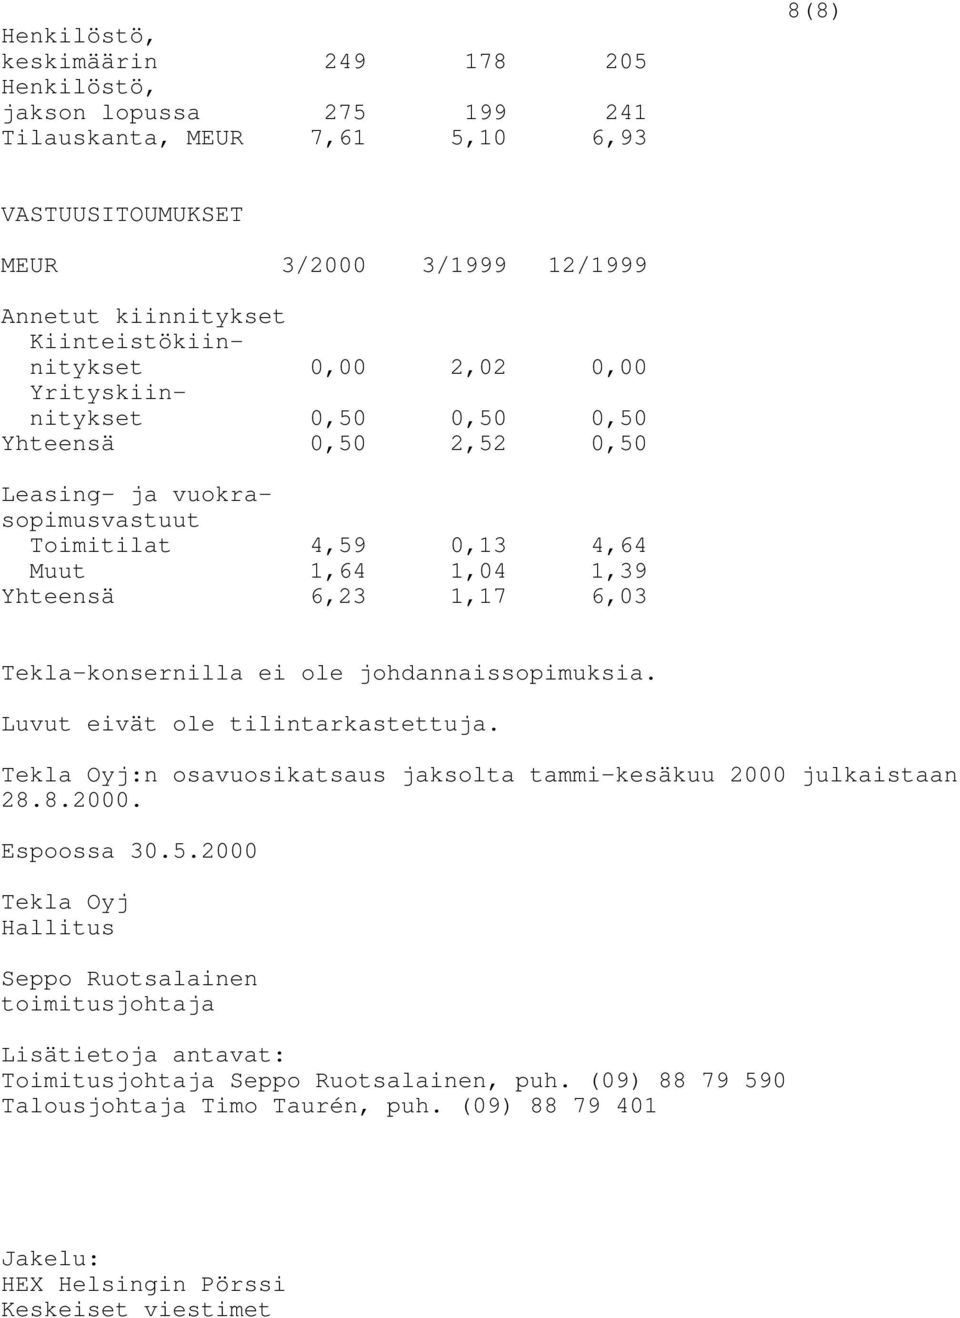 6,03 Tekla-konsernilla ei ole johdannaissopimuksia. Luvut eivät ole tilintarkastettuja. Tekla Oyj:n osavuosikatsaus jaksolta tammi-kesäkuu 2000 julkaistaan 28.8.2000. Espoossa 30.5.